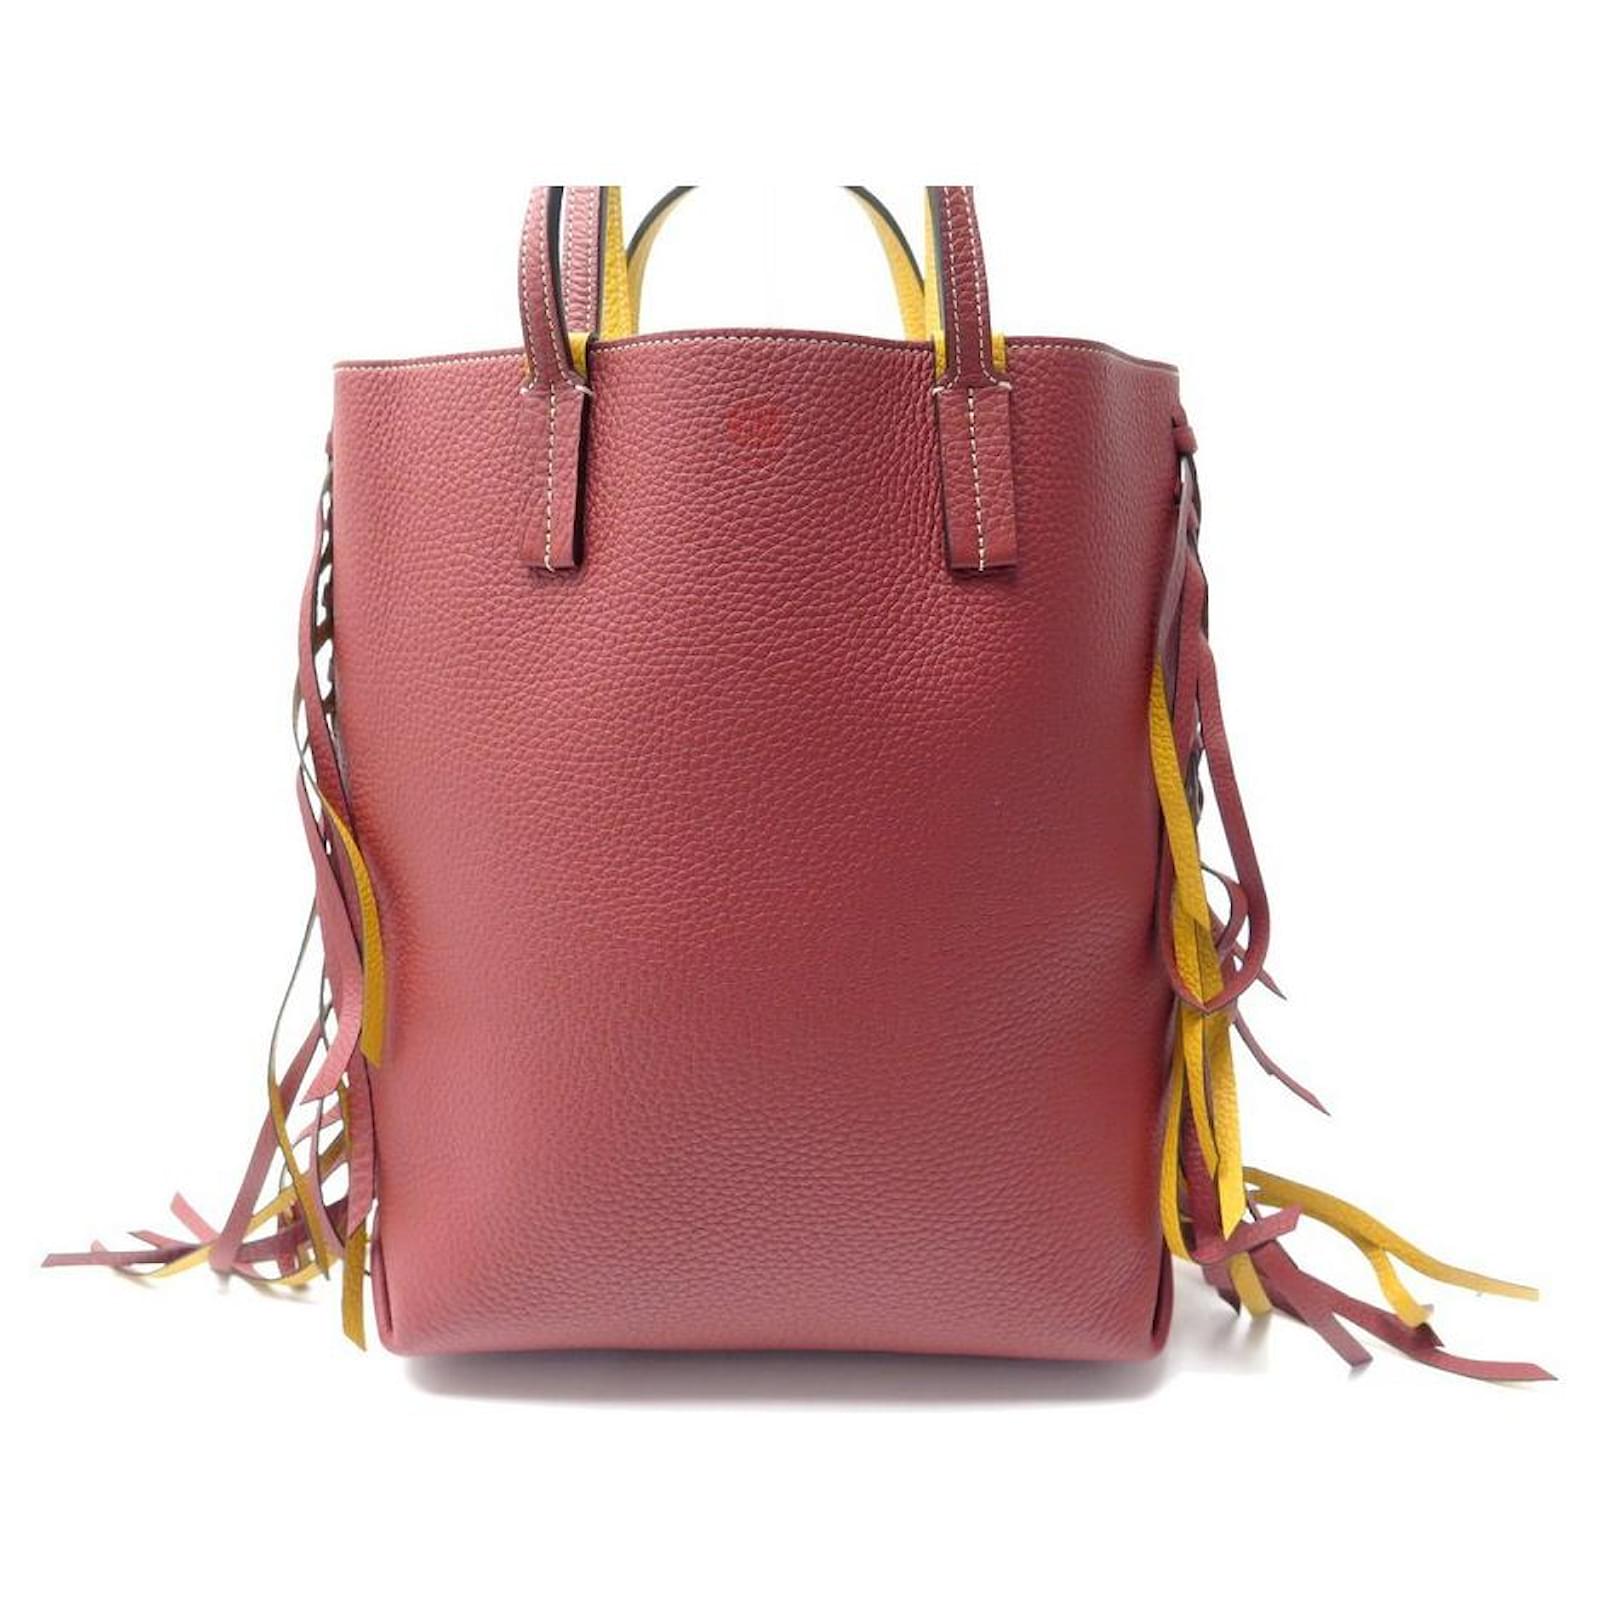 taurillon leather handbags